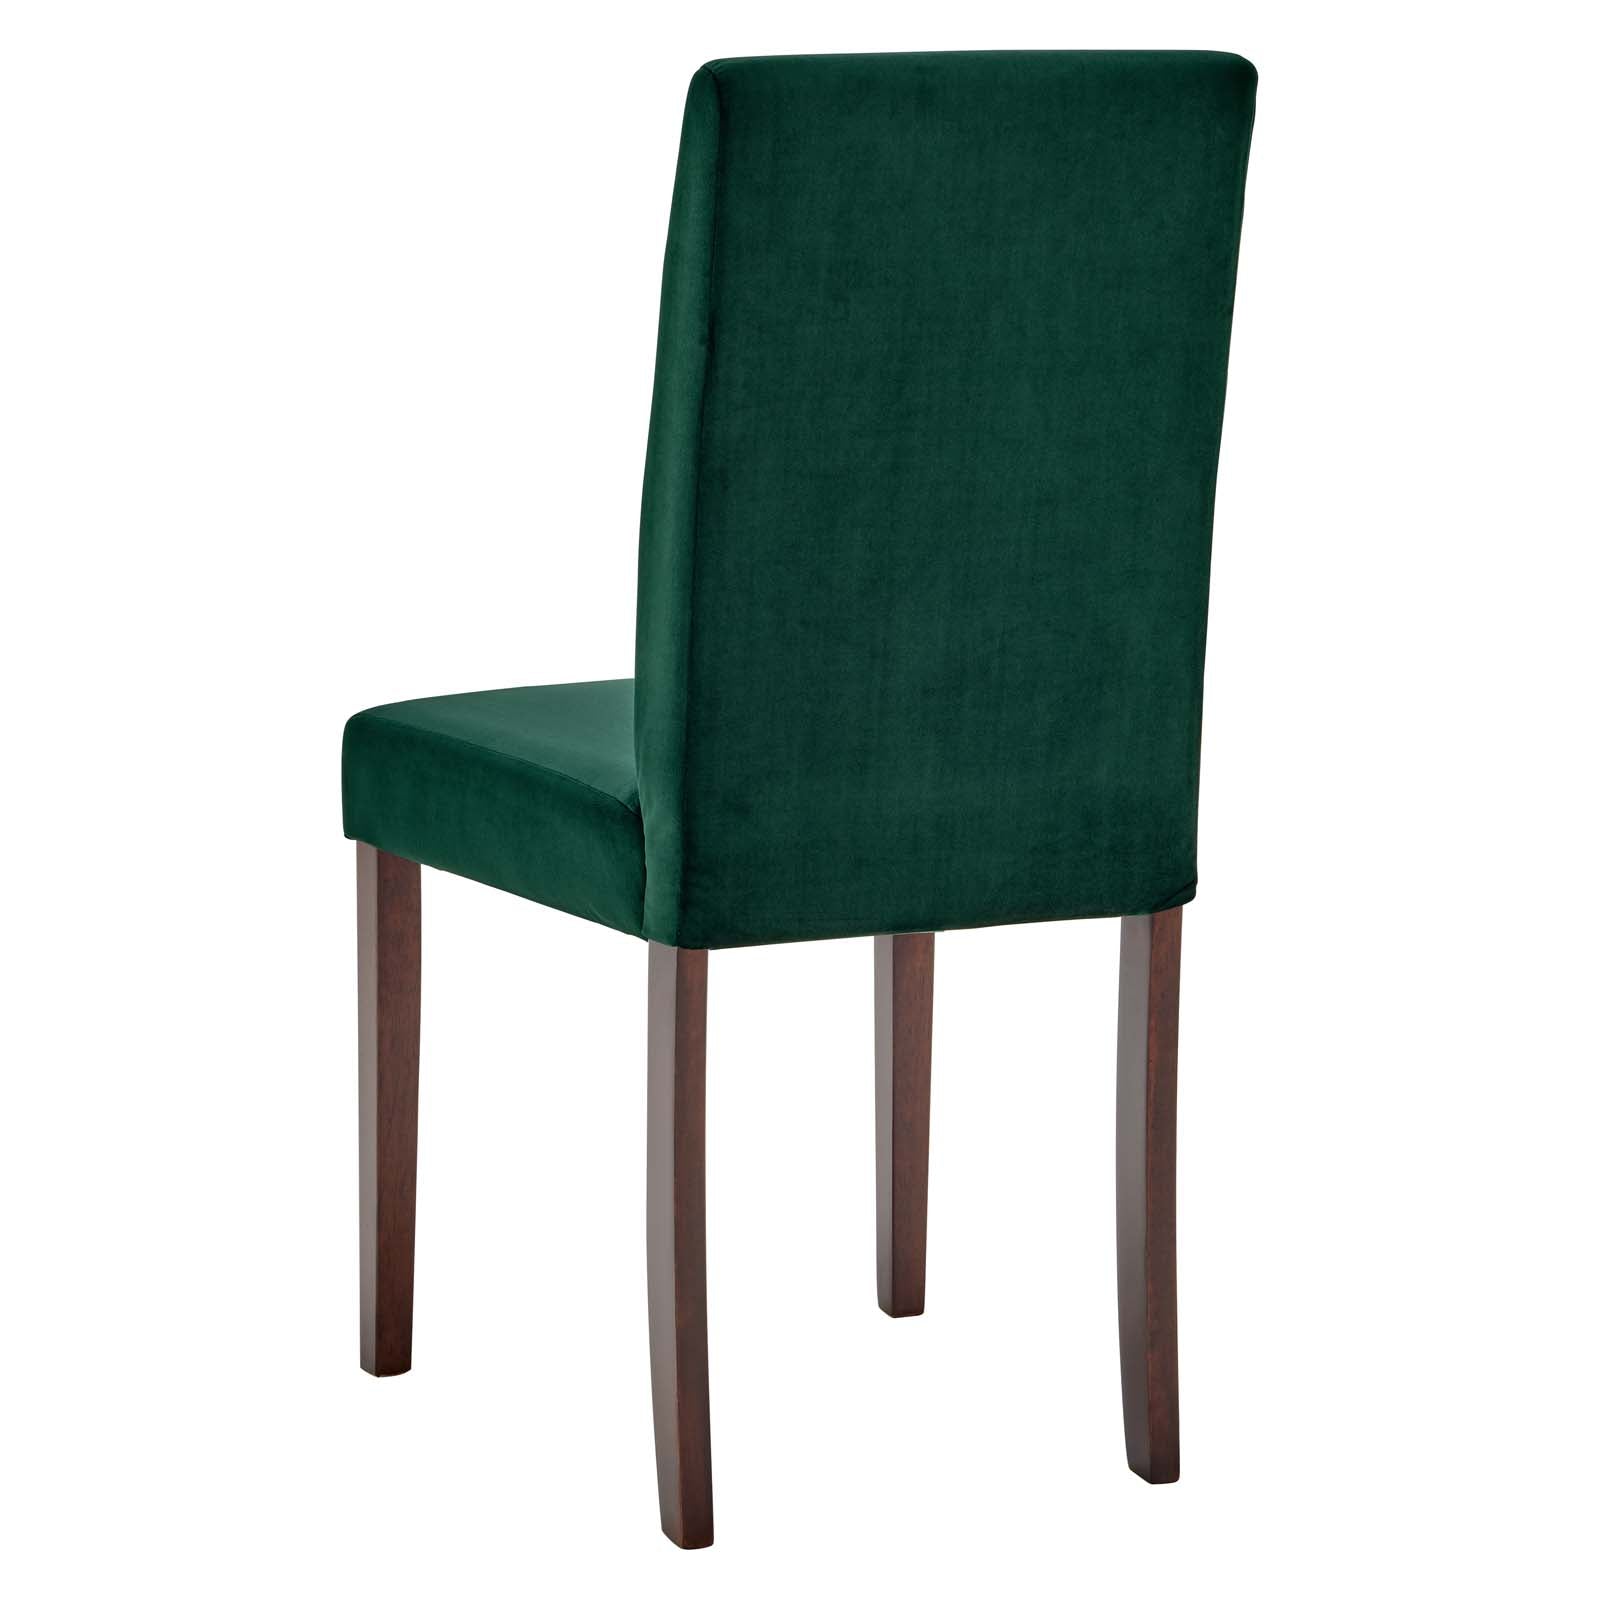 Prosper Upholstered Velvet Dining Side Chair Set of 2